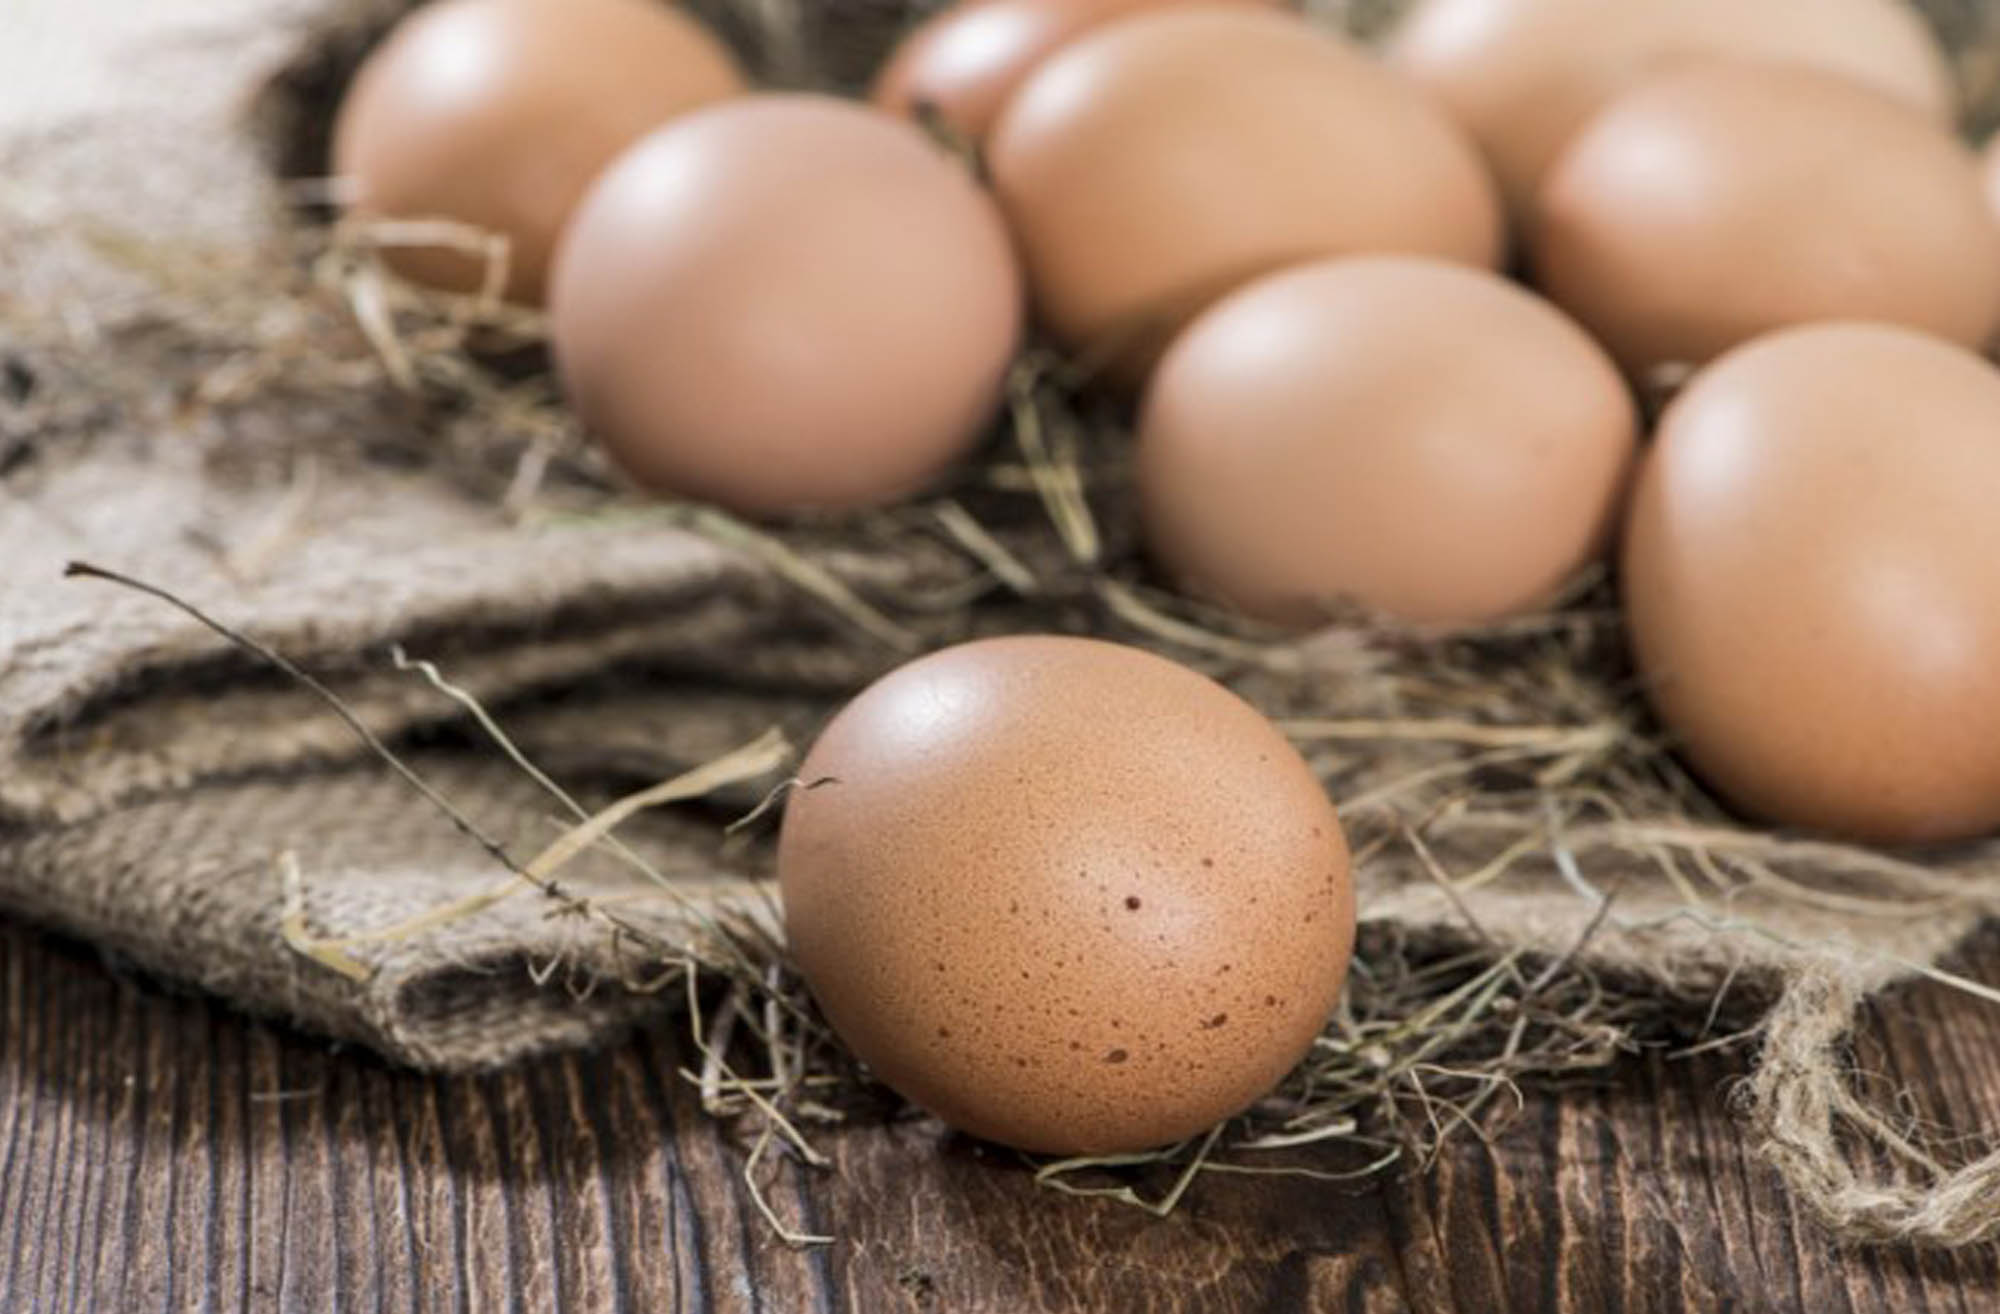 پرورش مرغ بومی تخمگذار